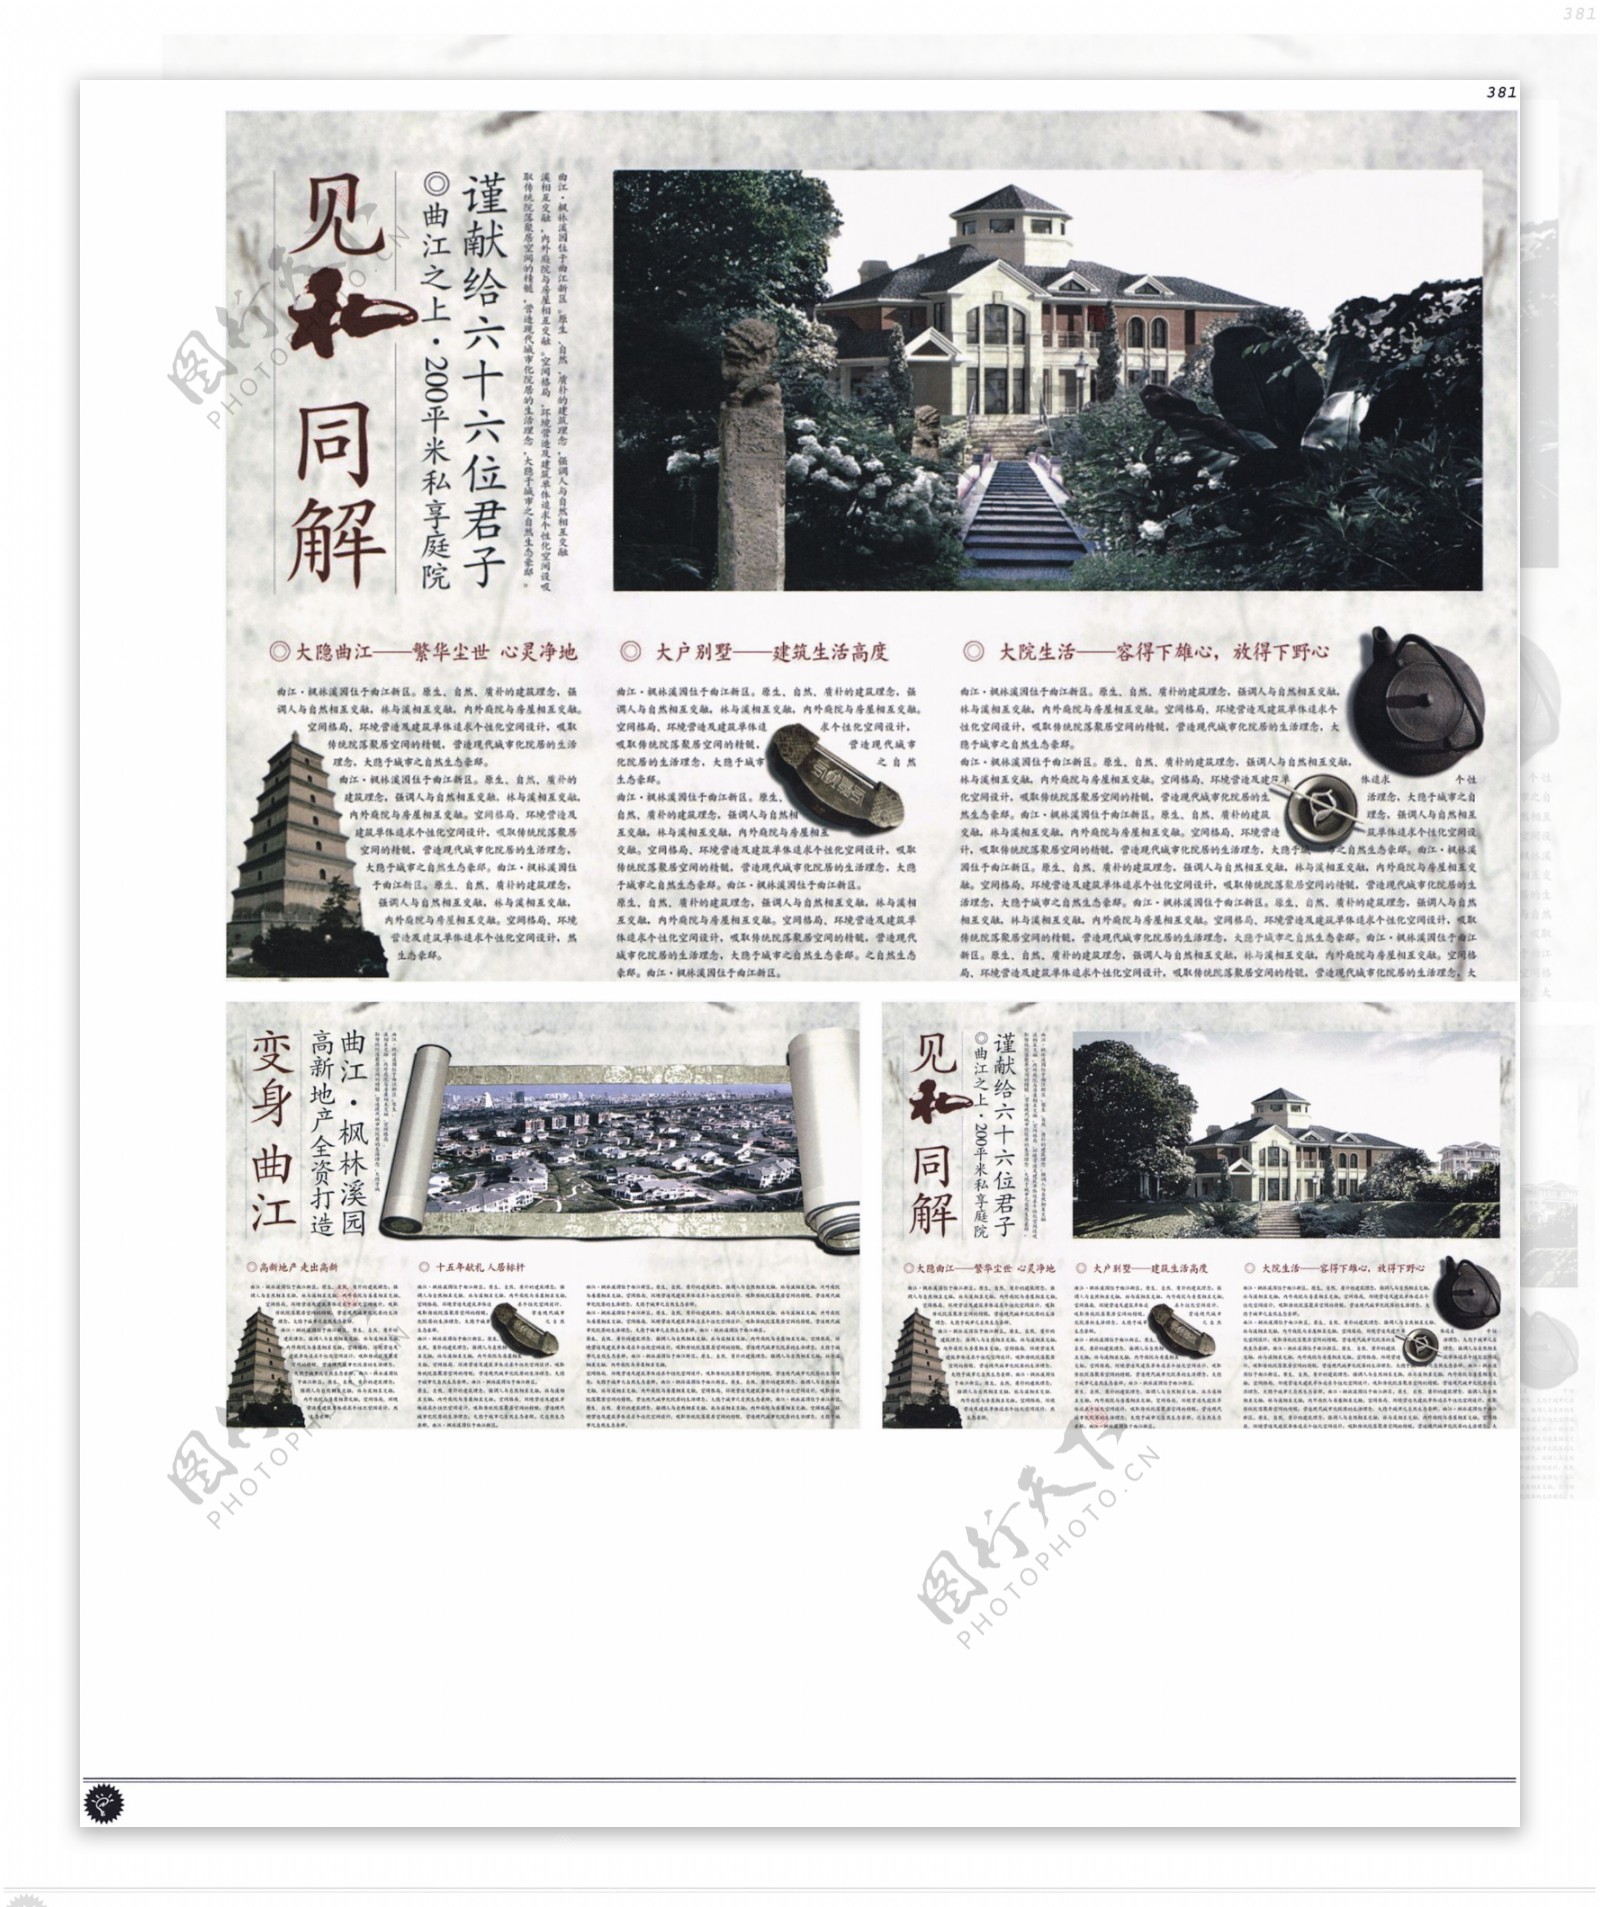 中国房地产广告年鉴第二册创意设计0375